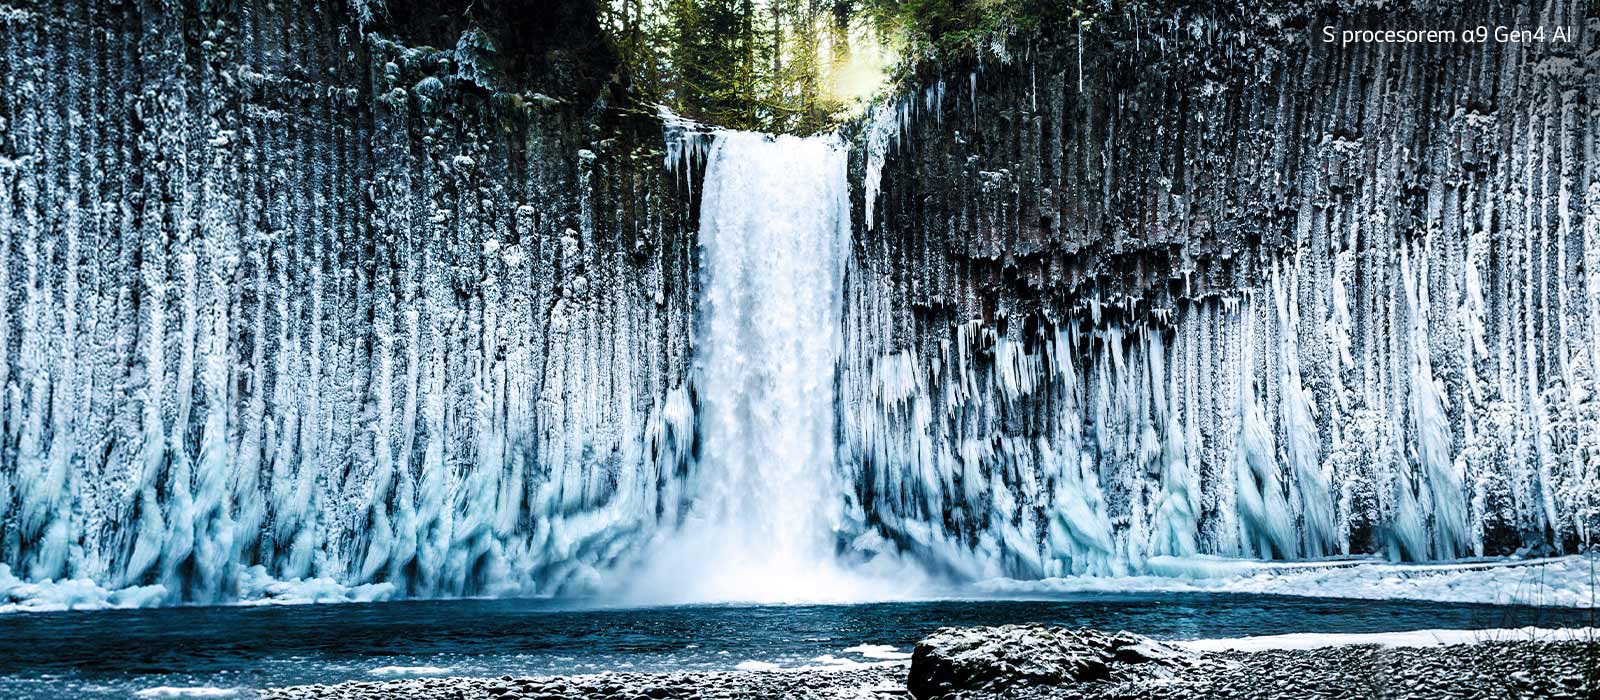 Porovnání snímků zmrzlého vodopádu v lese z hlediska kvality obrazu.